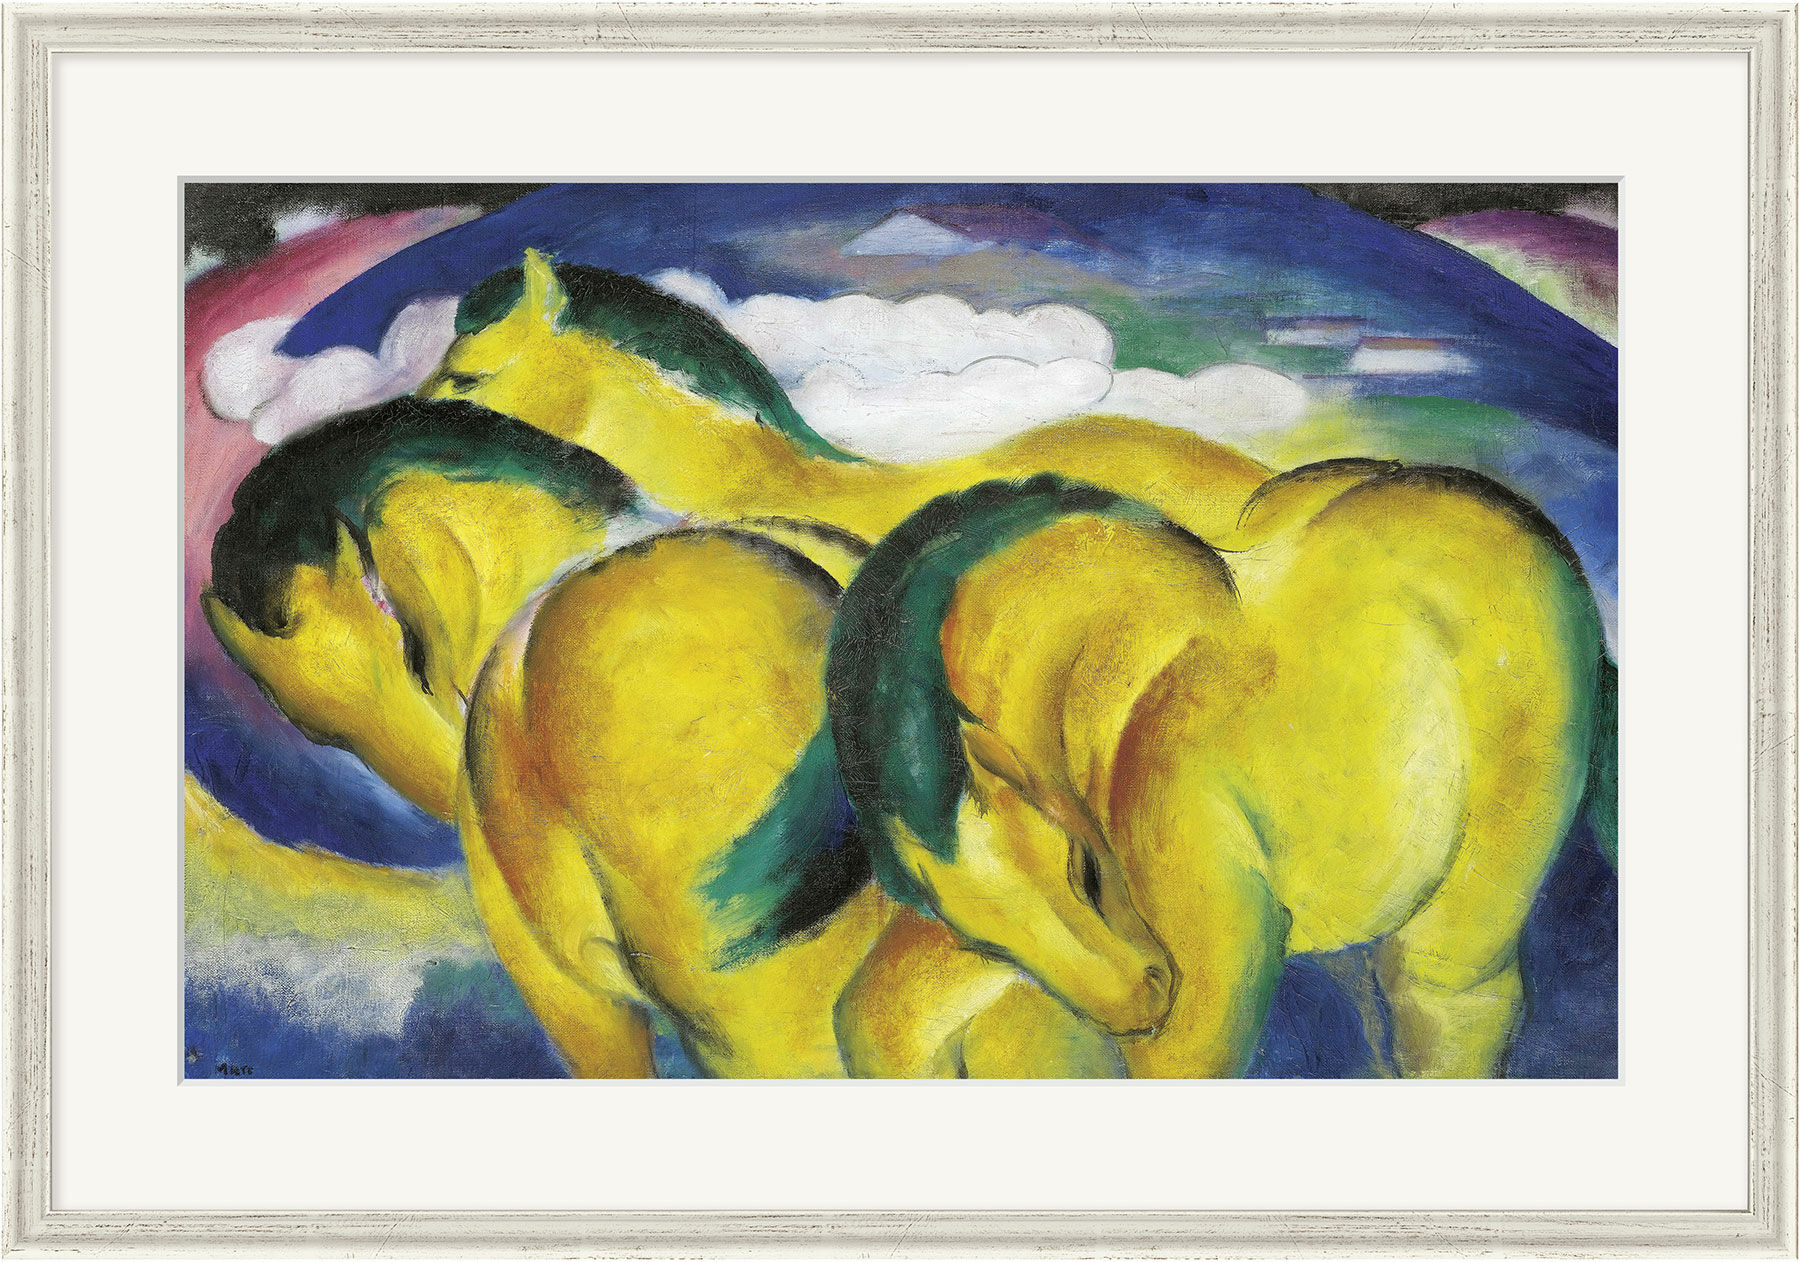 Beeld "De gele paardjes" (1912), ingelijst von Franz Marc